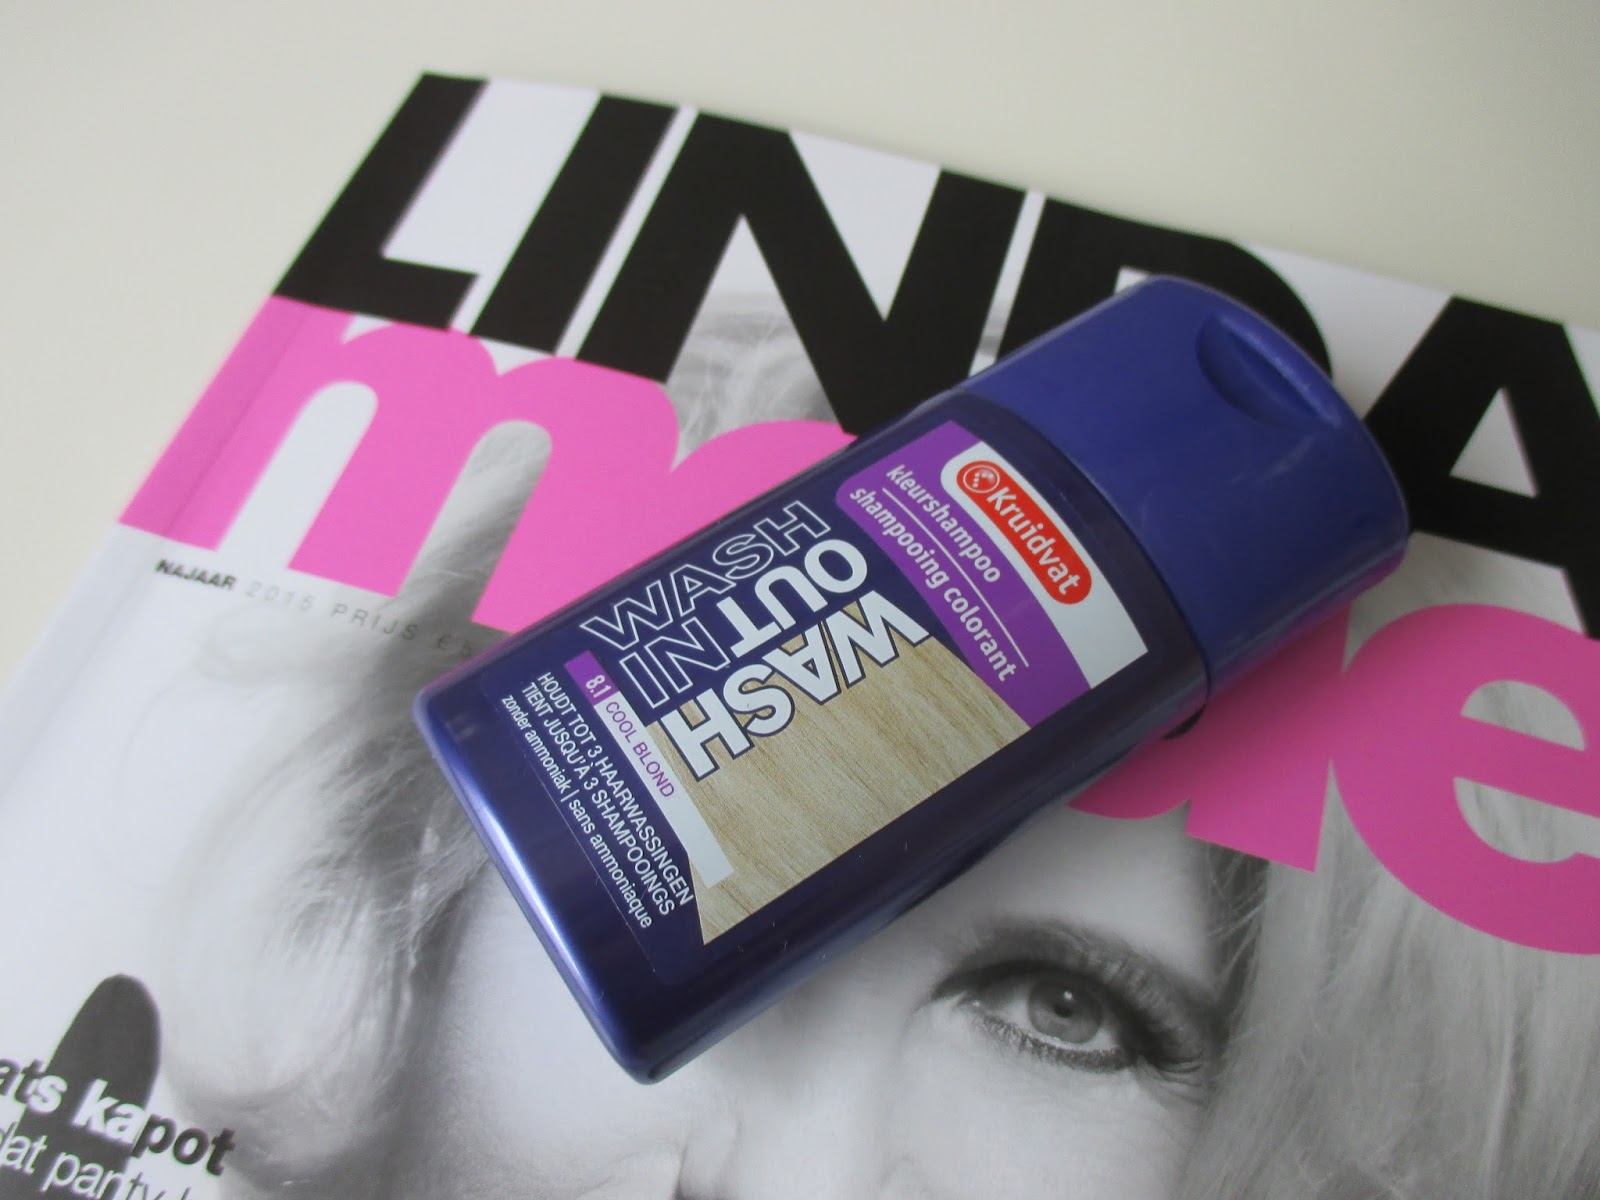 inkt Bijdrage Verblinding Review: Kruidvat Wash Out kleurshampoo Cool Blond - Irispraat.nl